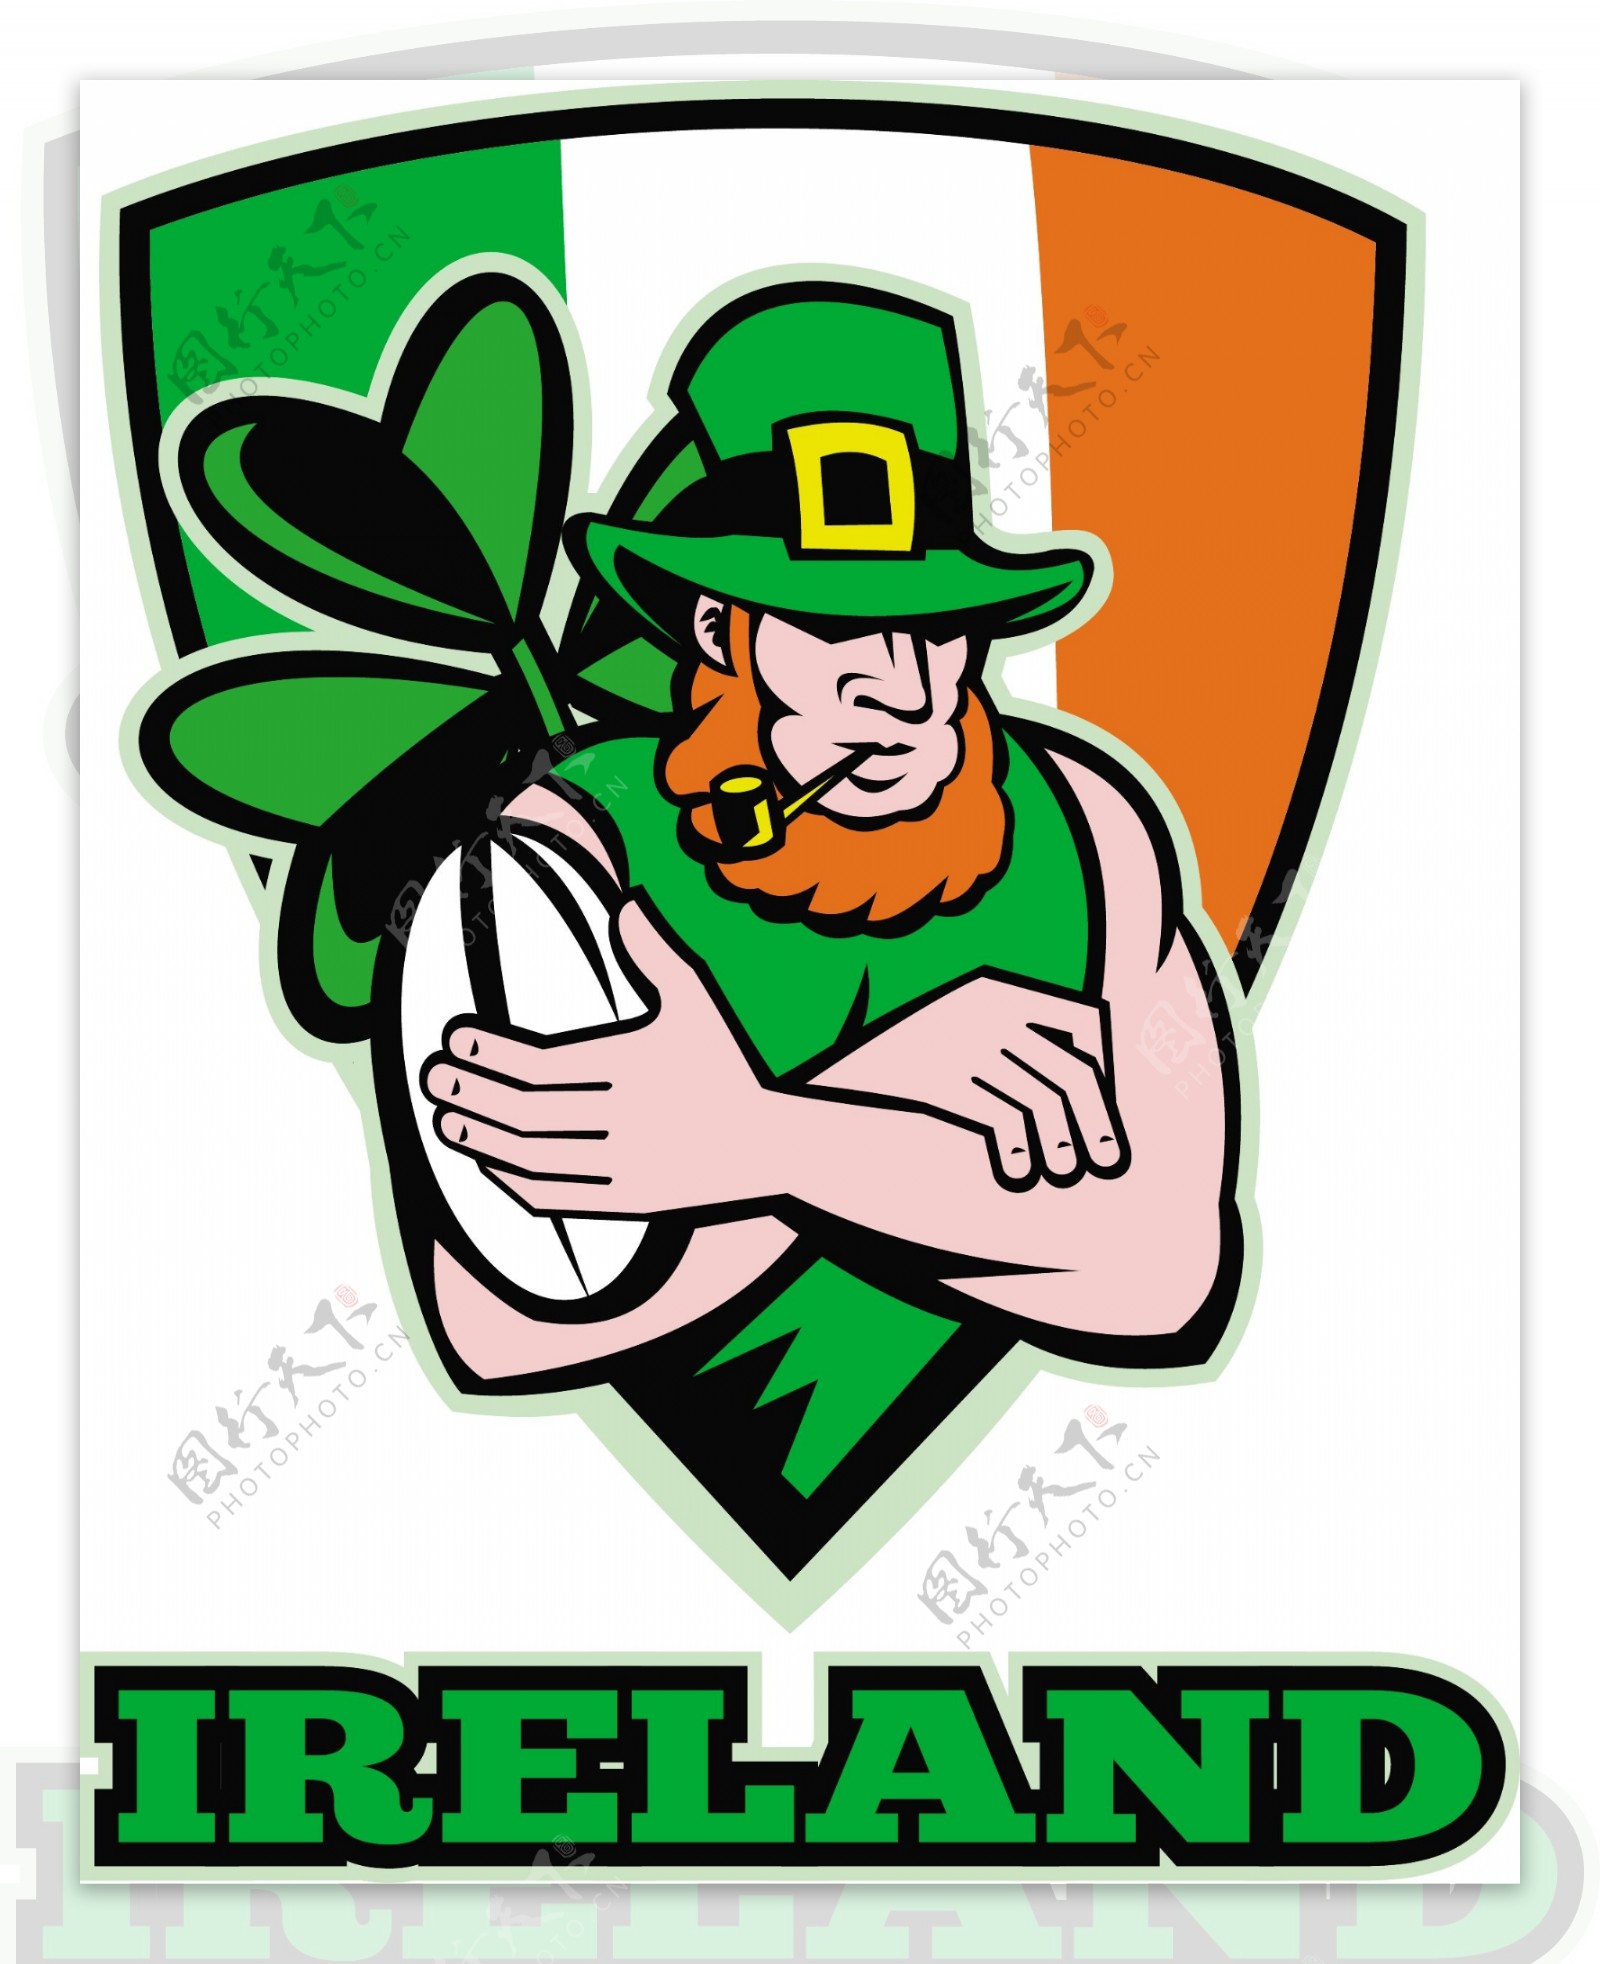 爱尔兰小妖精的橄榄球运动员爱尔兰凯尔特人盾